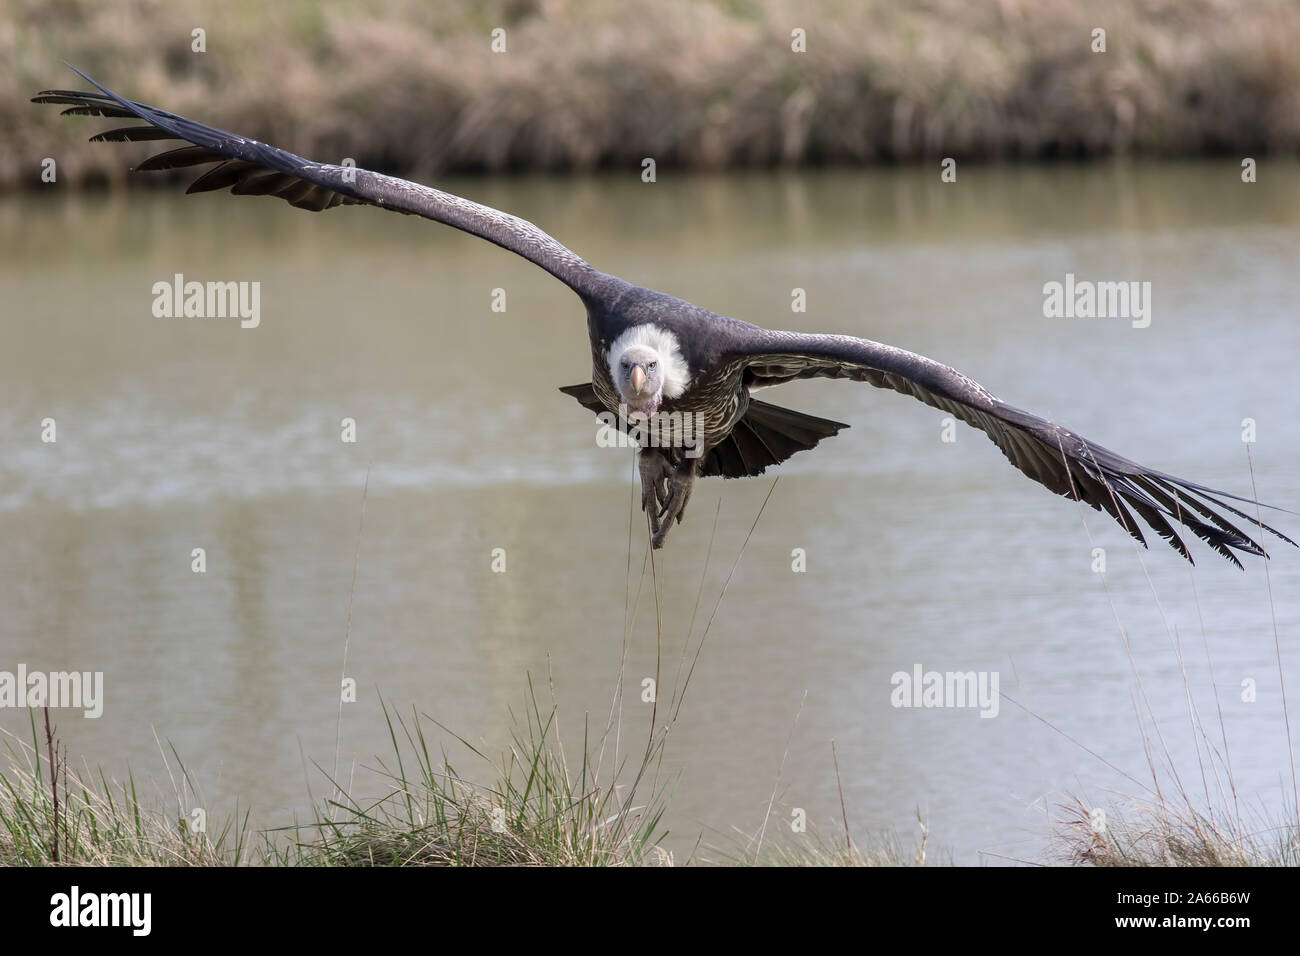 Avvoltoio in volo. Ruppells grifone (Gyps rueppelli) scavenger uccello volare verso la telecamera. Vulture con ali distese di fronte alla fotocamera in basso Foto Stock